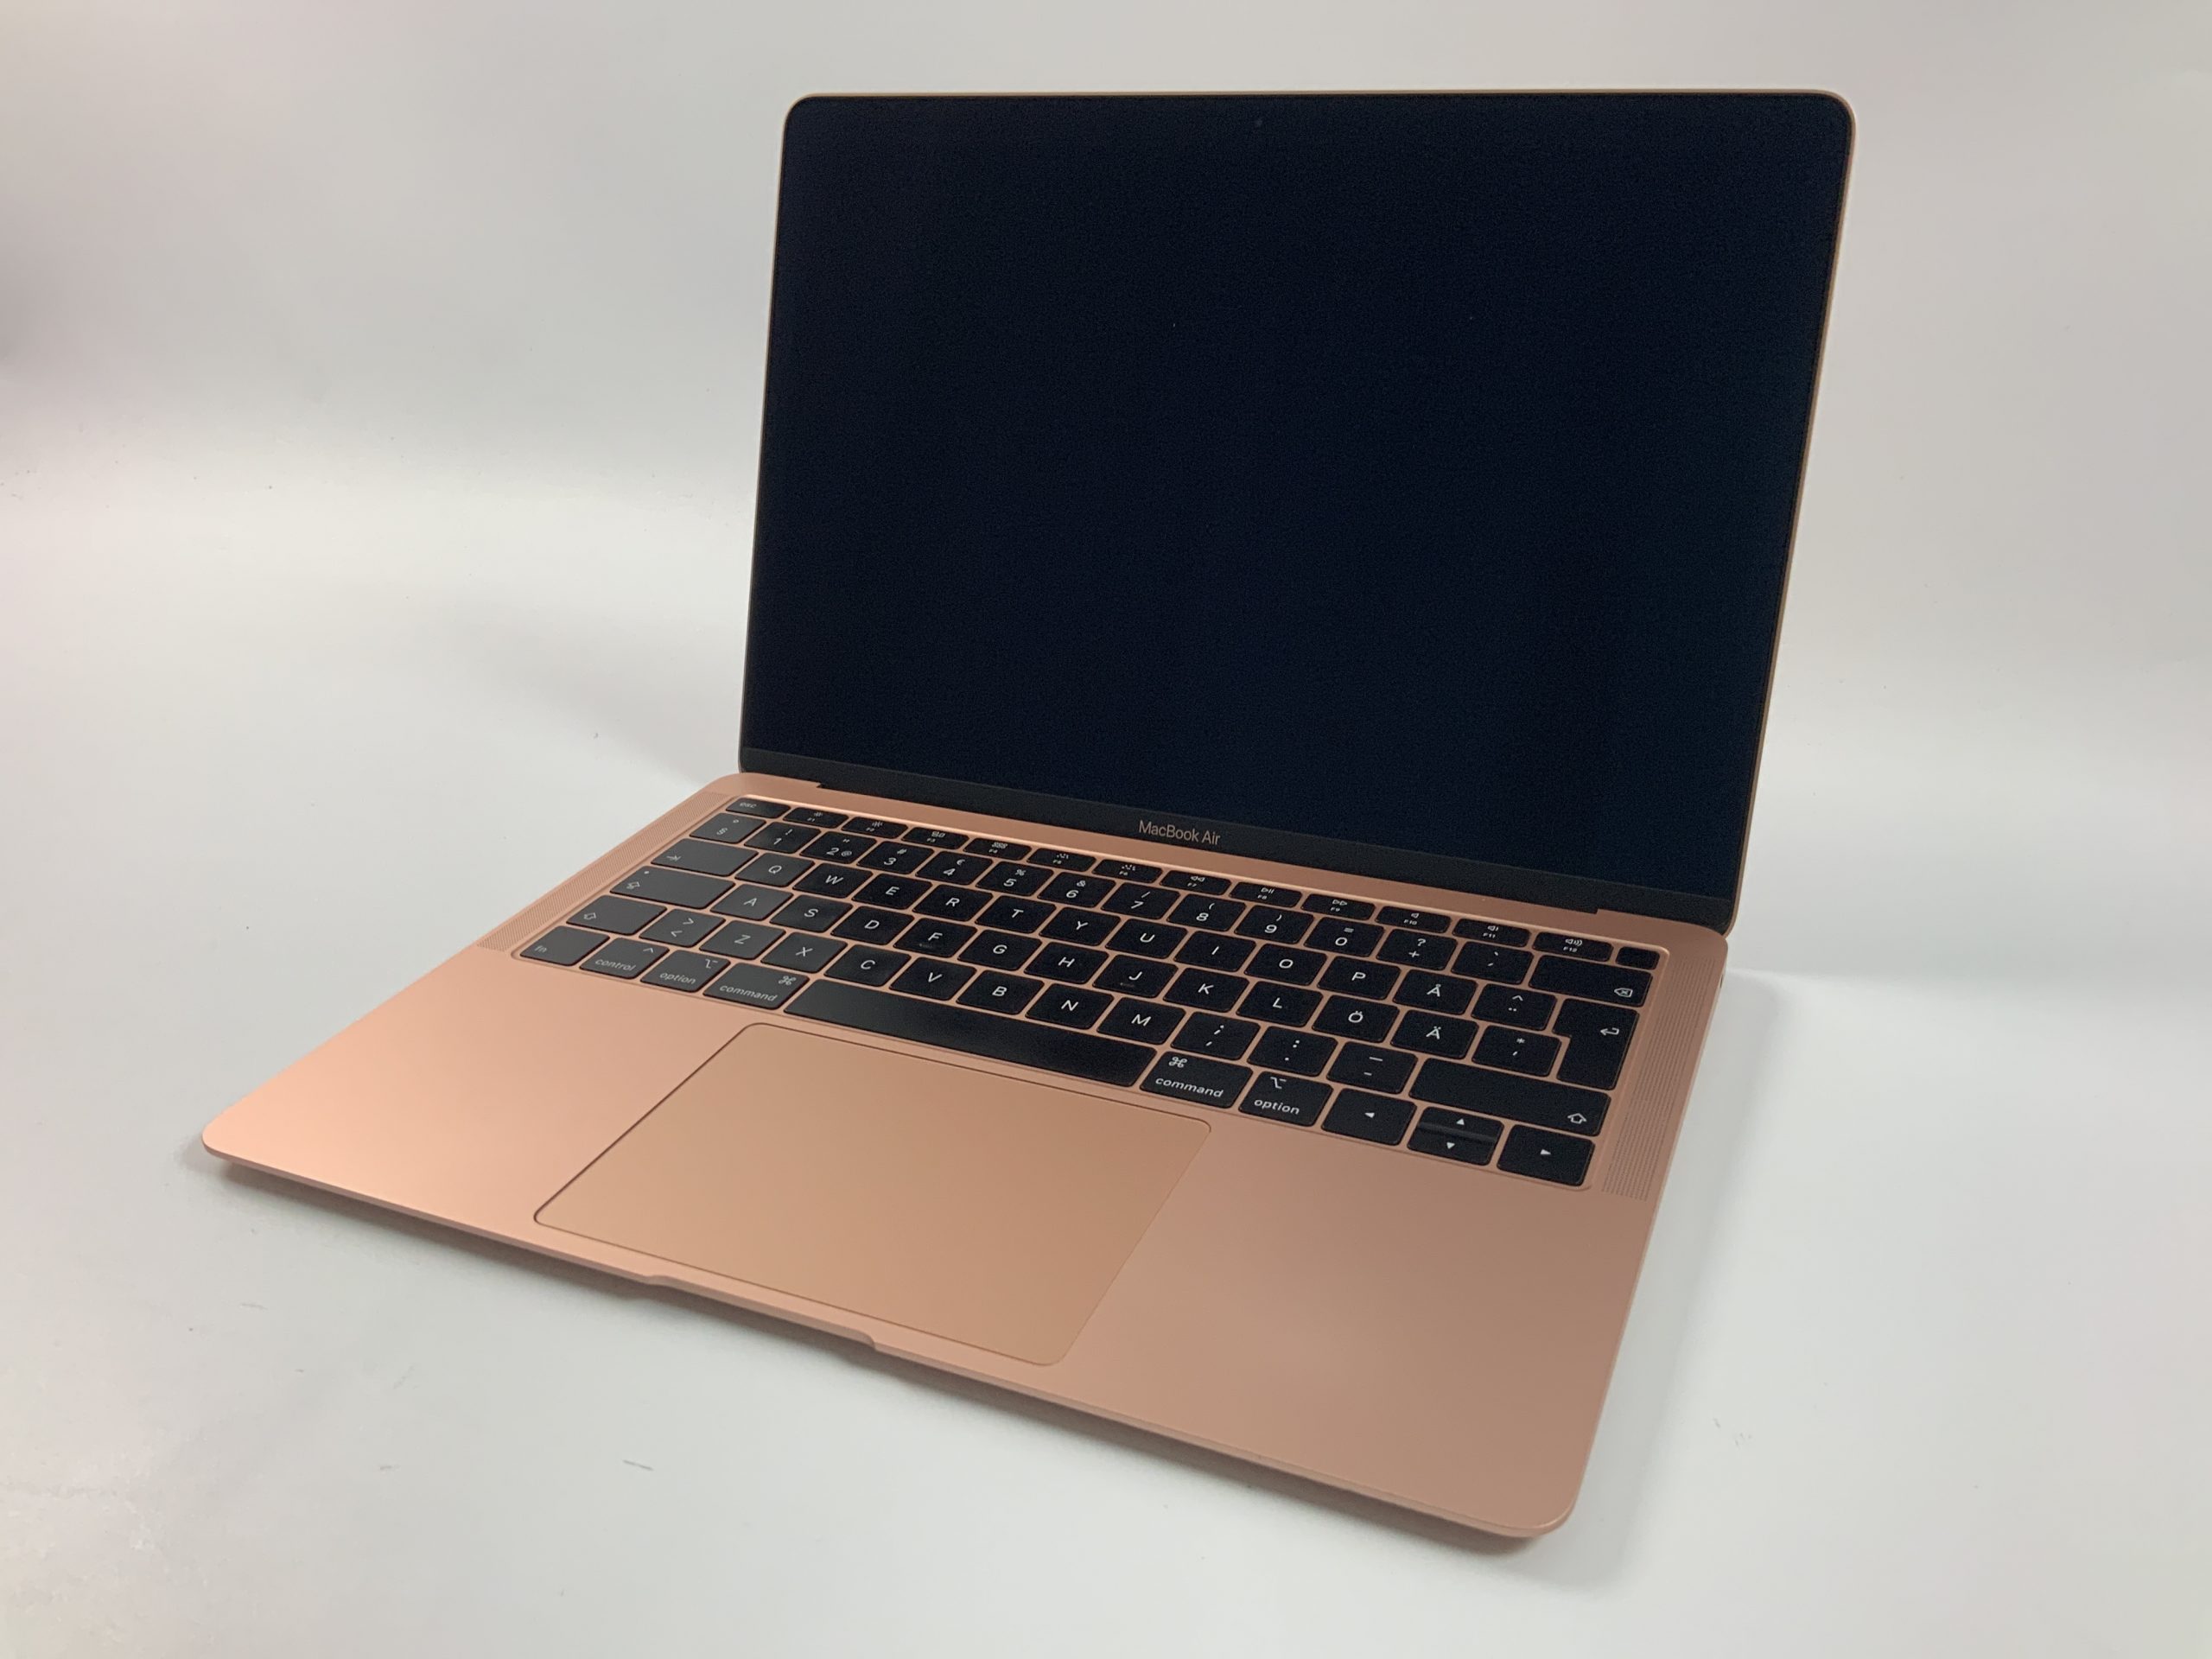 MacBook Air 13" Mid 2019 (Intel Core i5 1.6 GHz 16 GB RAM 256 GB SSD), Gold, Intel Core i5 1.6 GHz, 16 GB RAM, 256 GB SSD, Bild 1